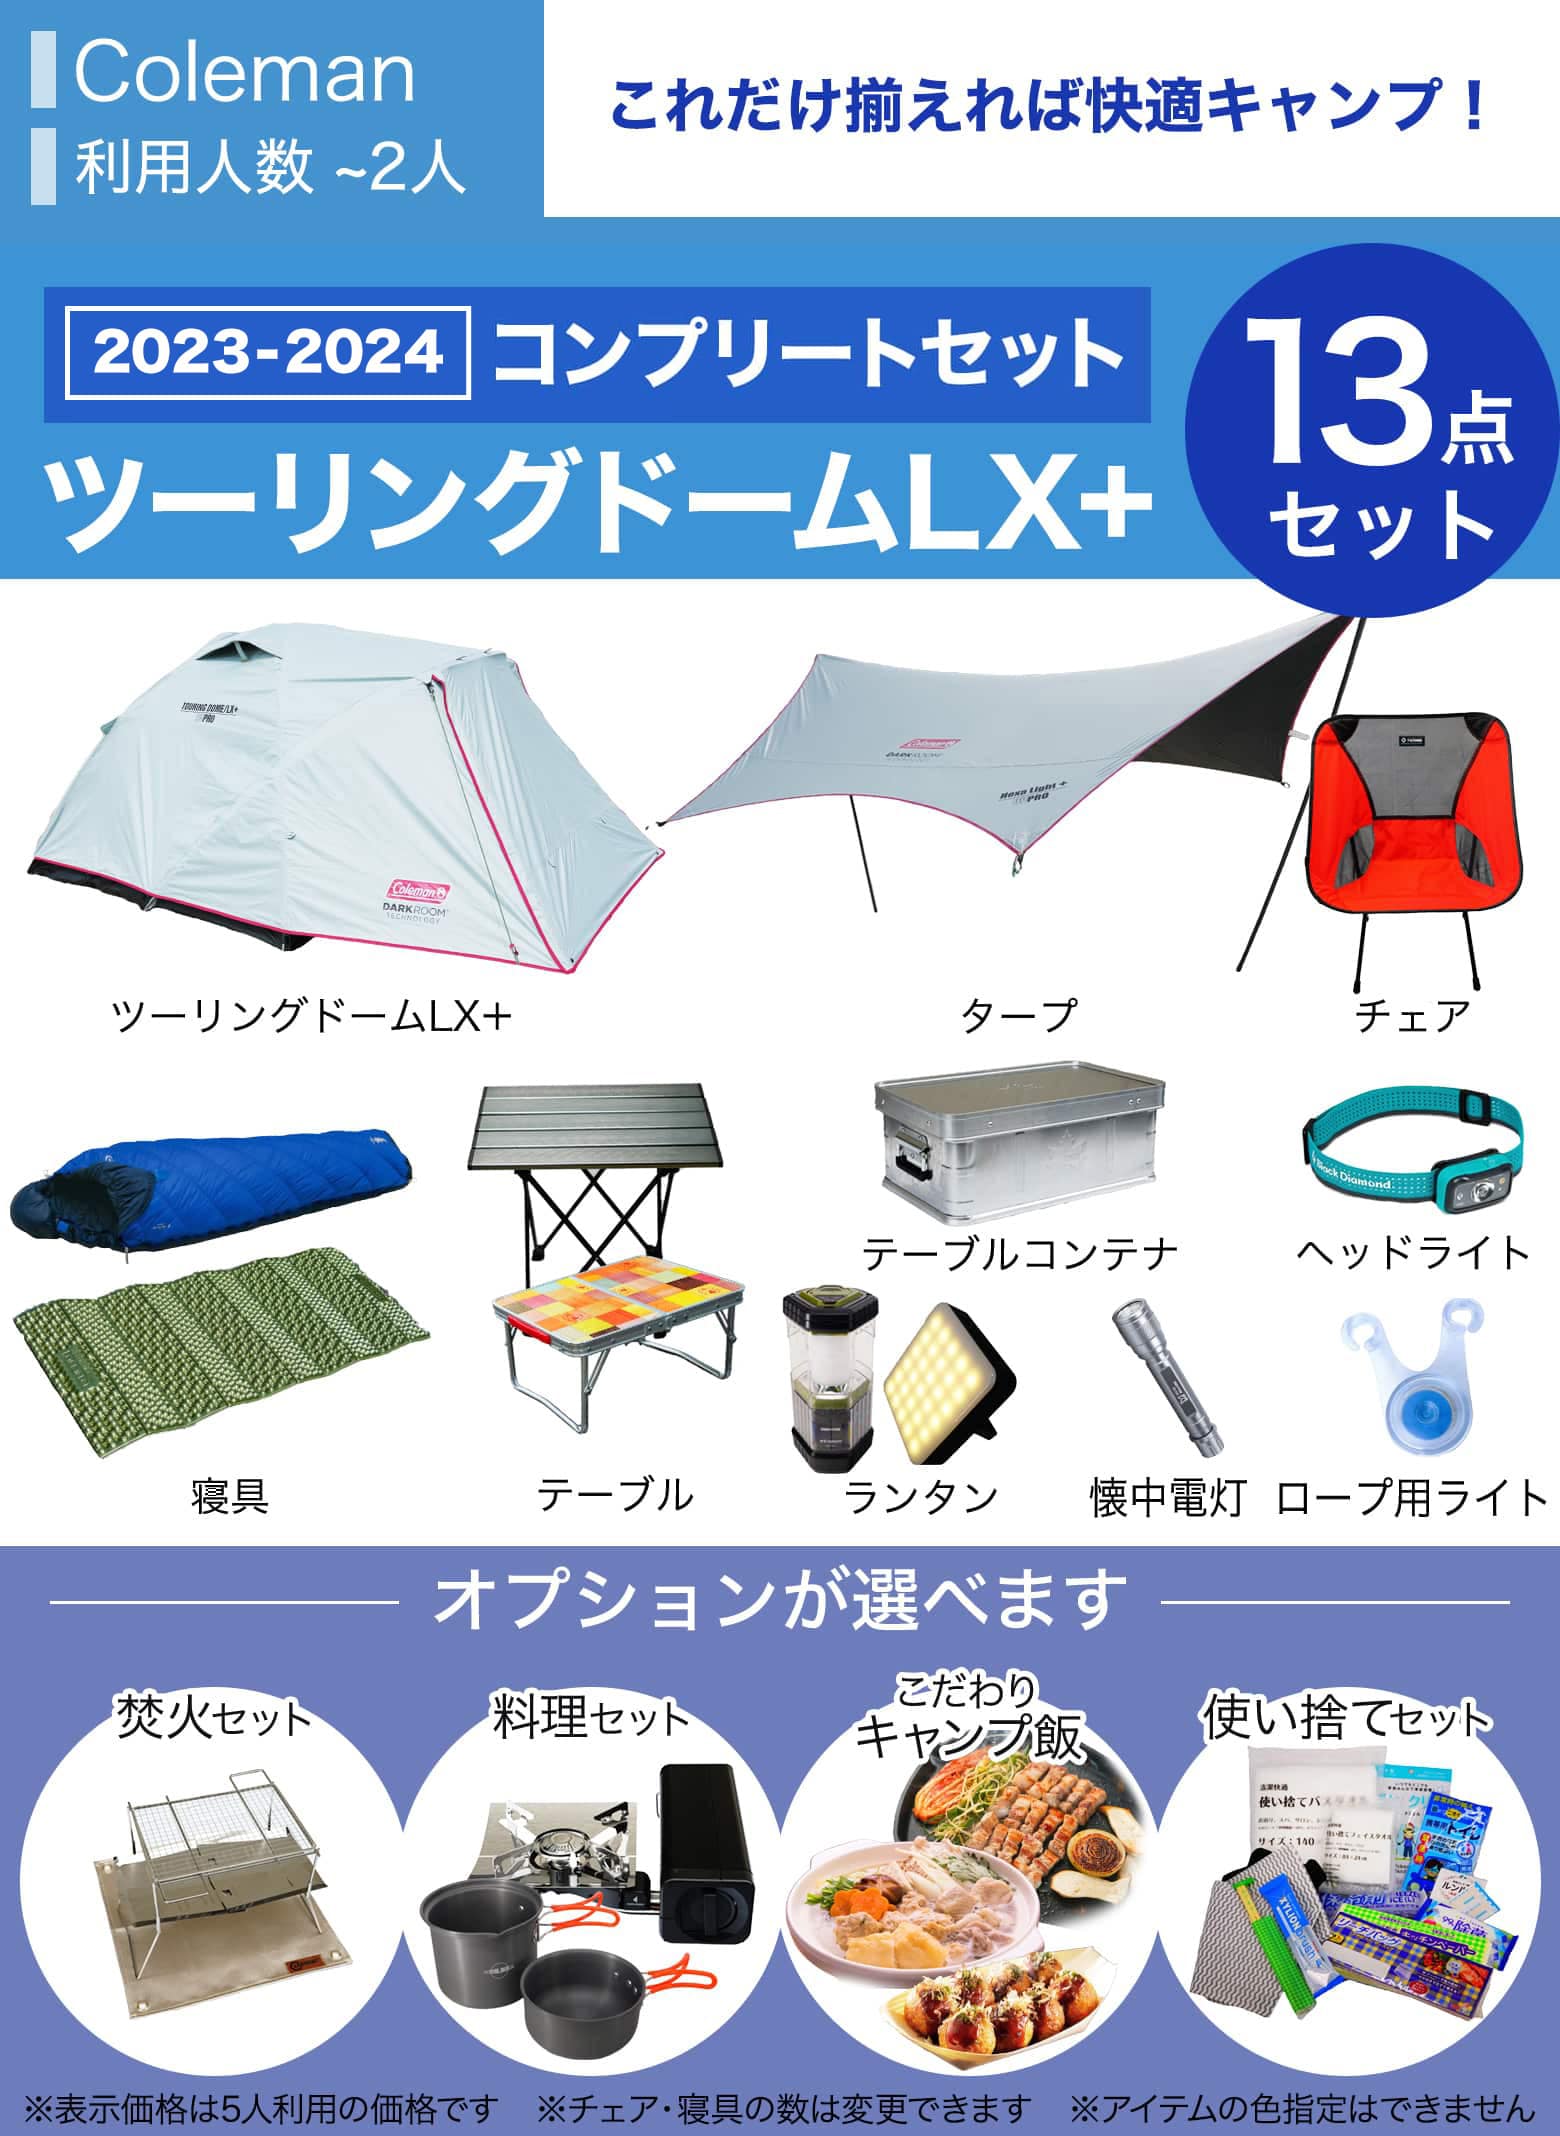 優先購入【※SA様専用】5点セットColeman ツーリングドームST キャンプ用品 テント・タープ